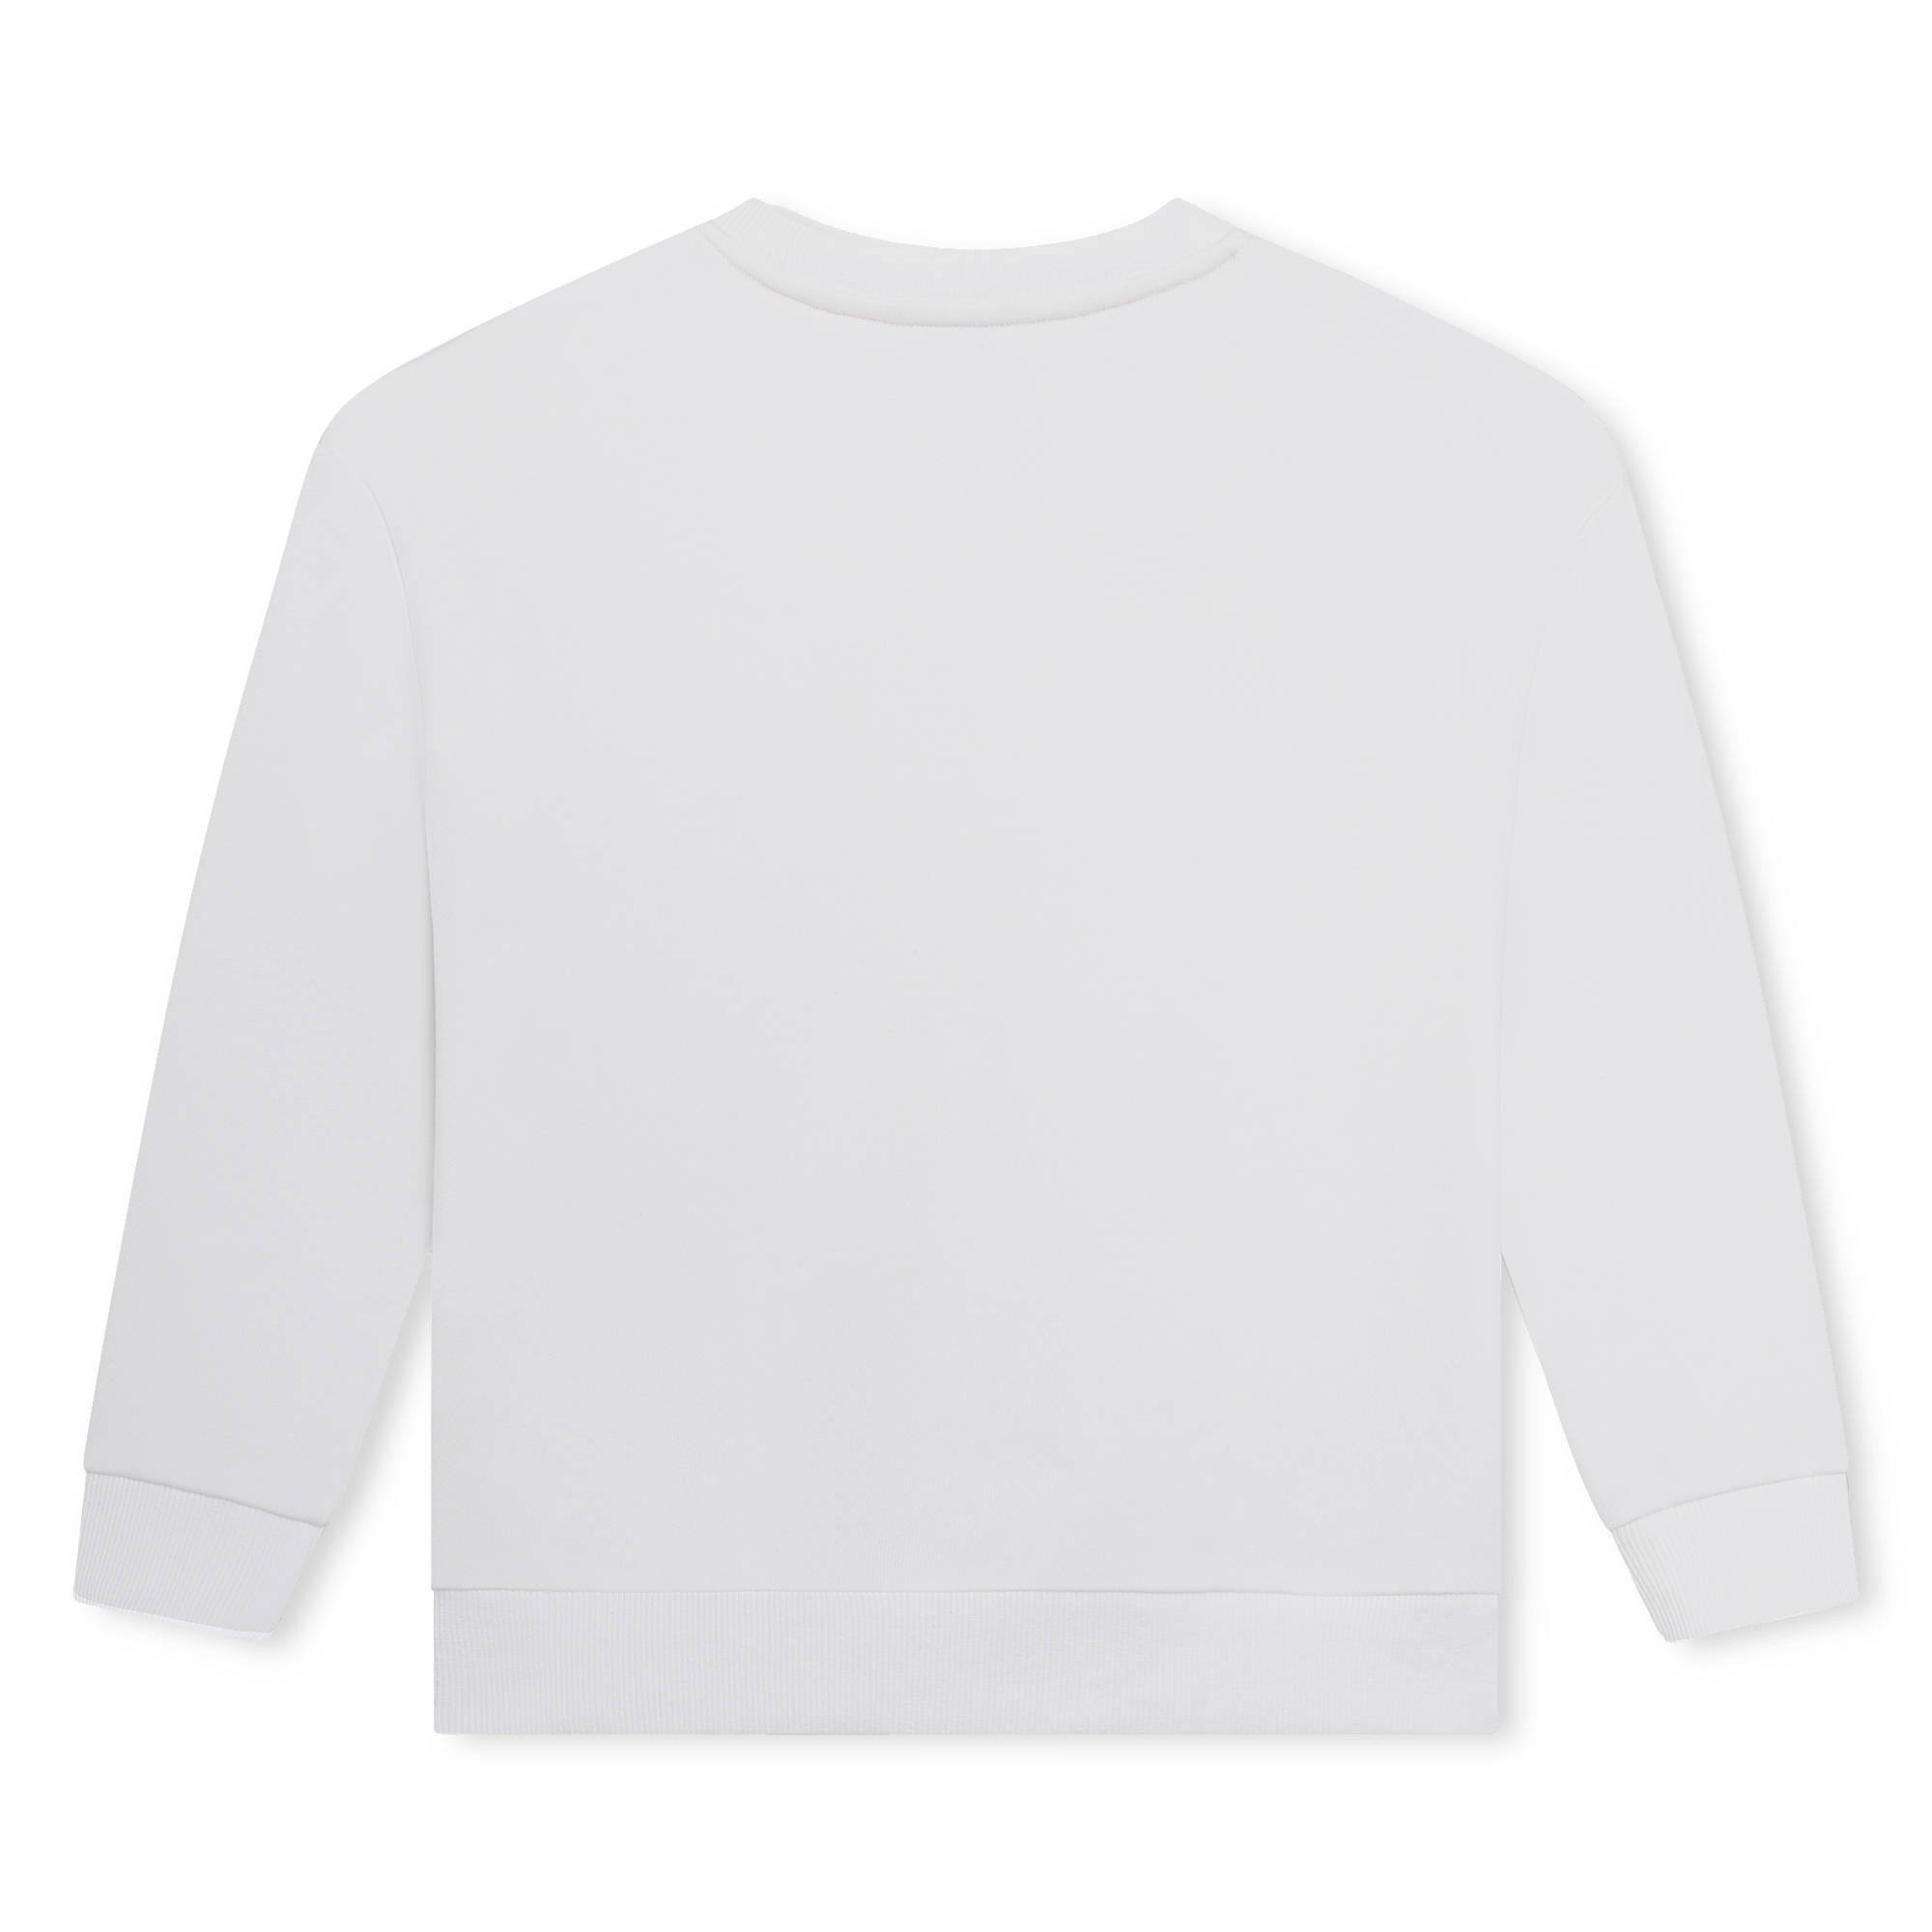 Sweater aus Fleece SONIA RYKIEL Für MÄDCHEN